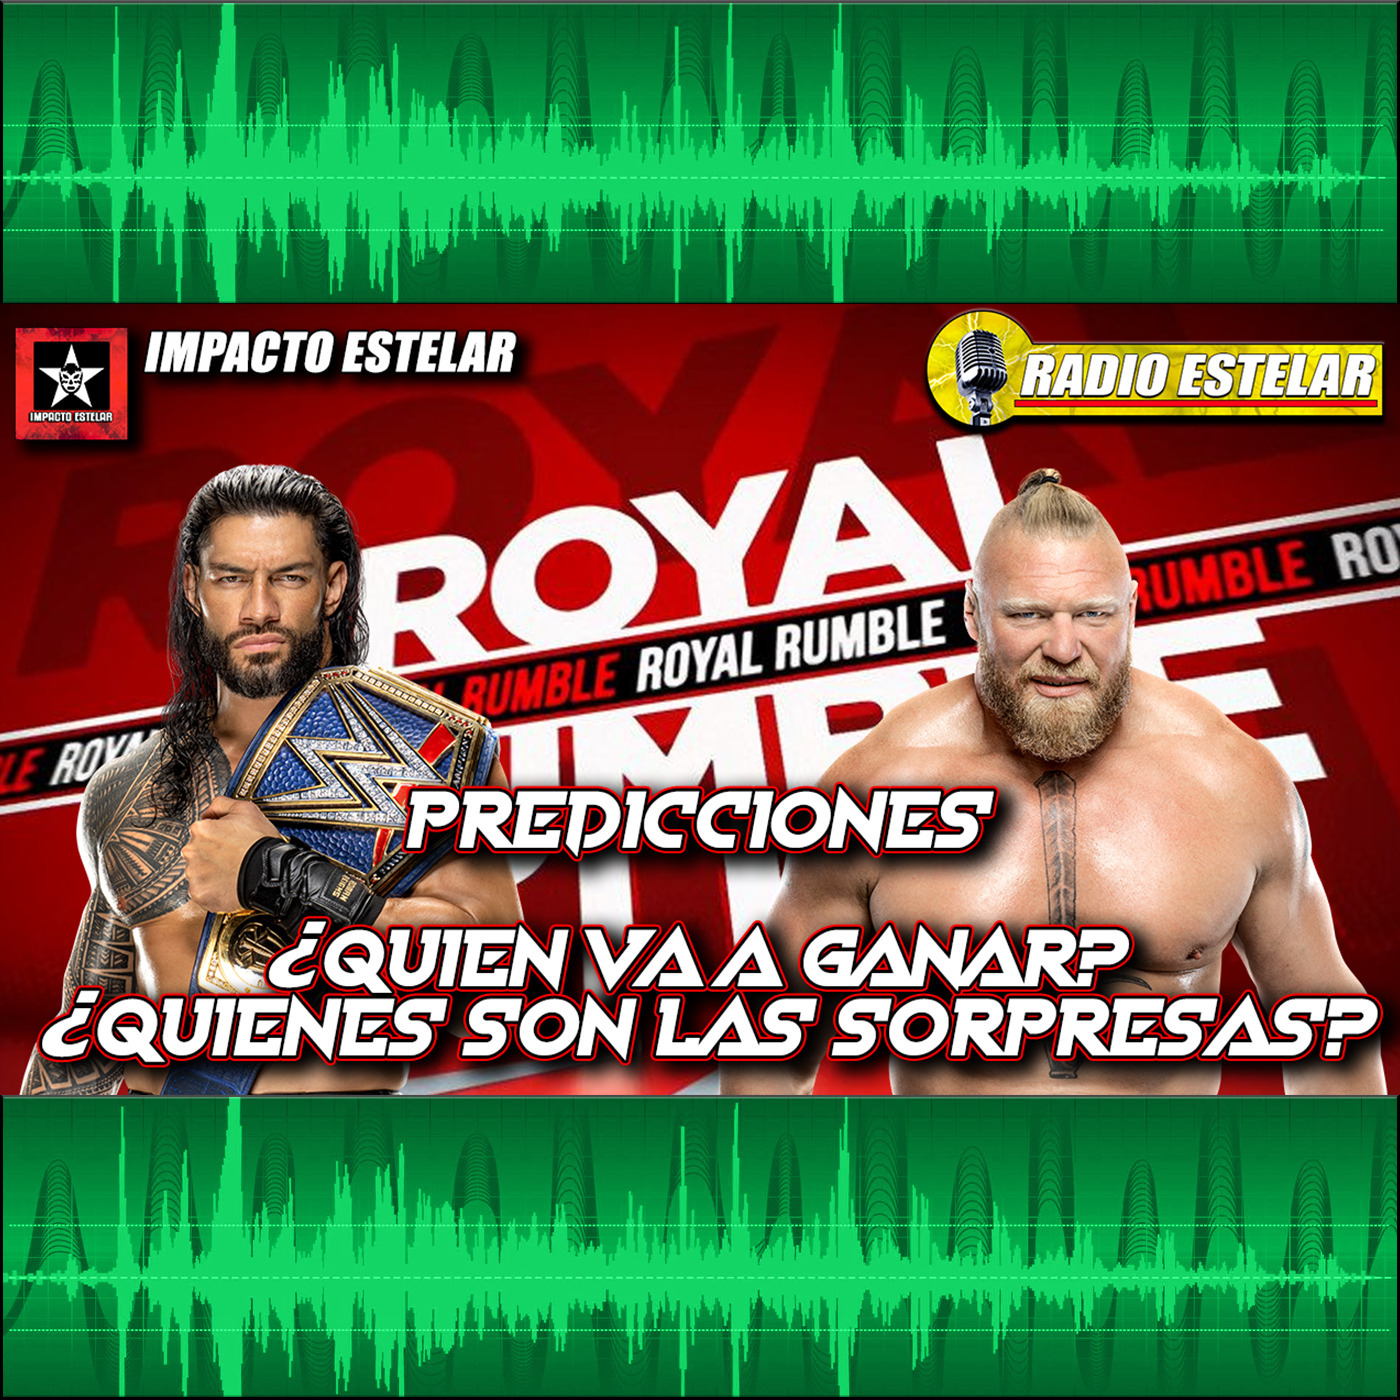 Predicciones del Royal Rumble, TV de Viernes, LAWE Update | Radio Estelar 01/29/22